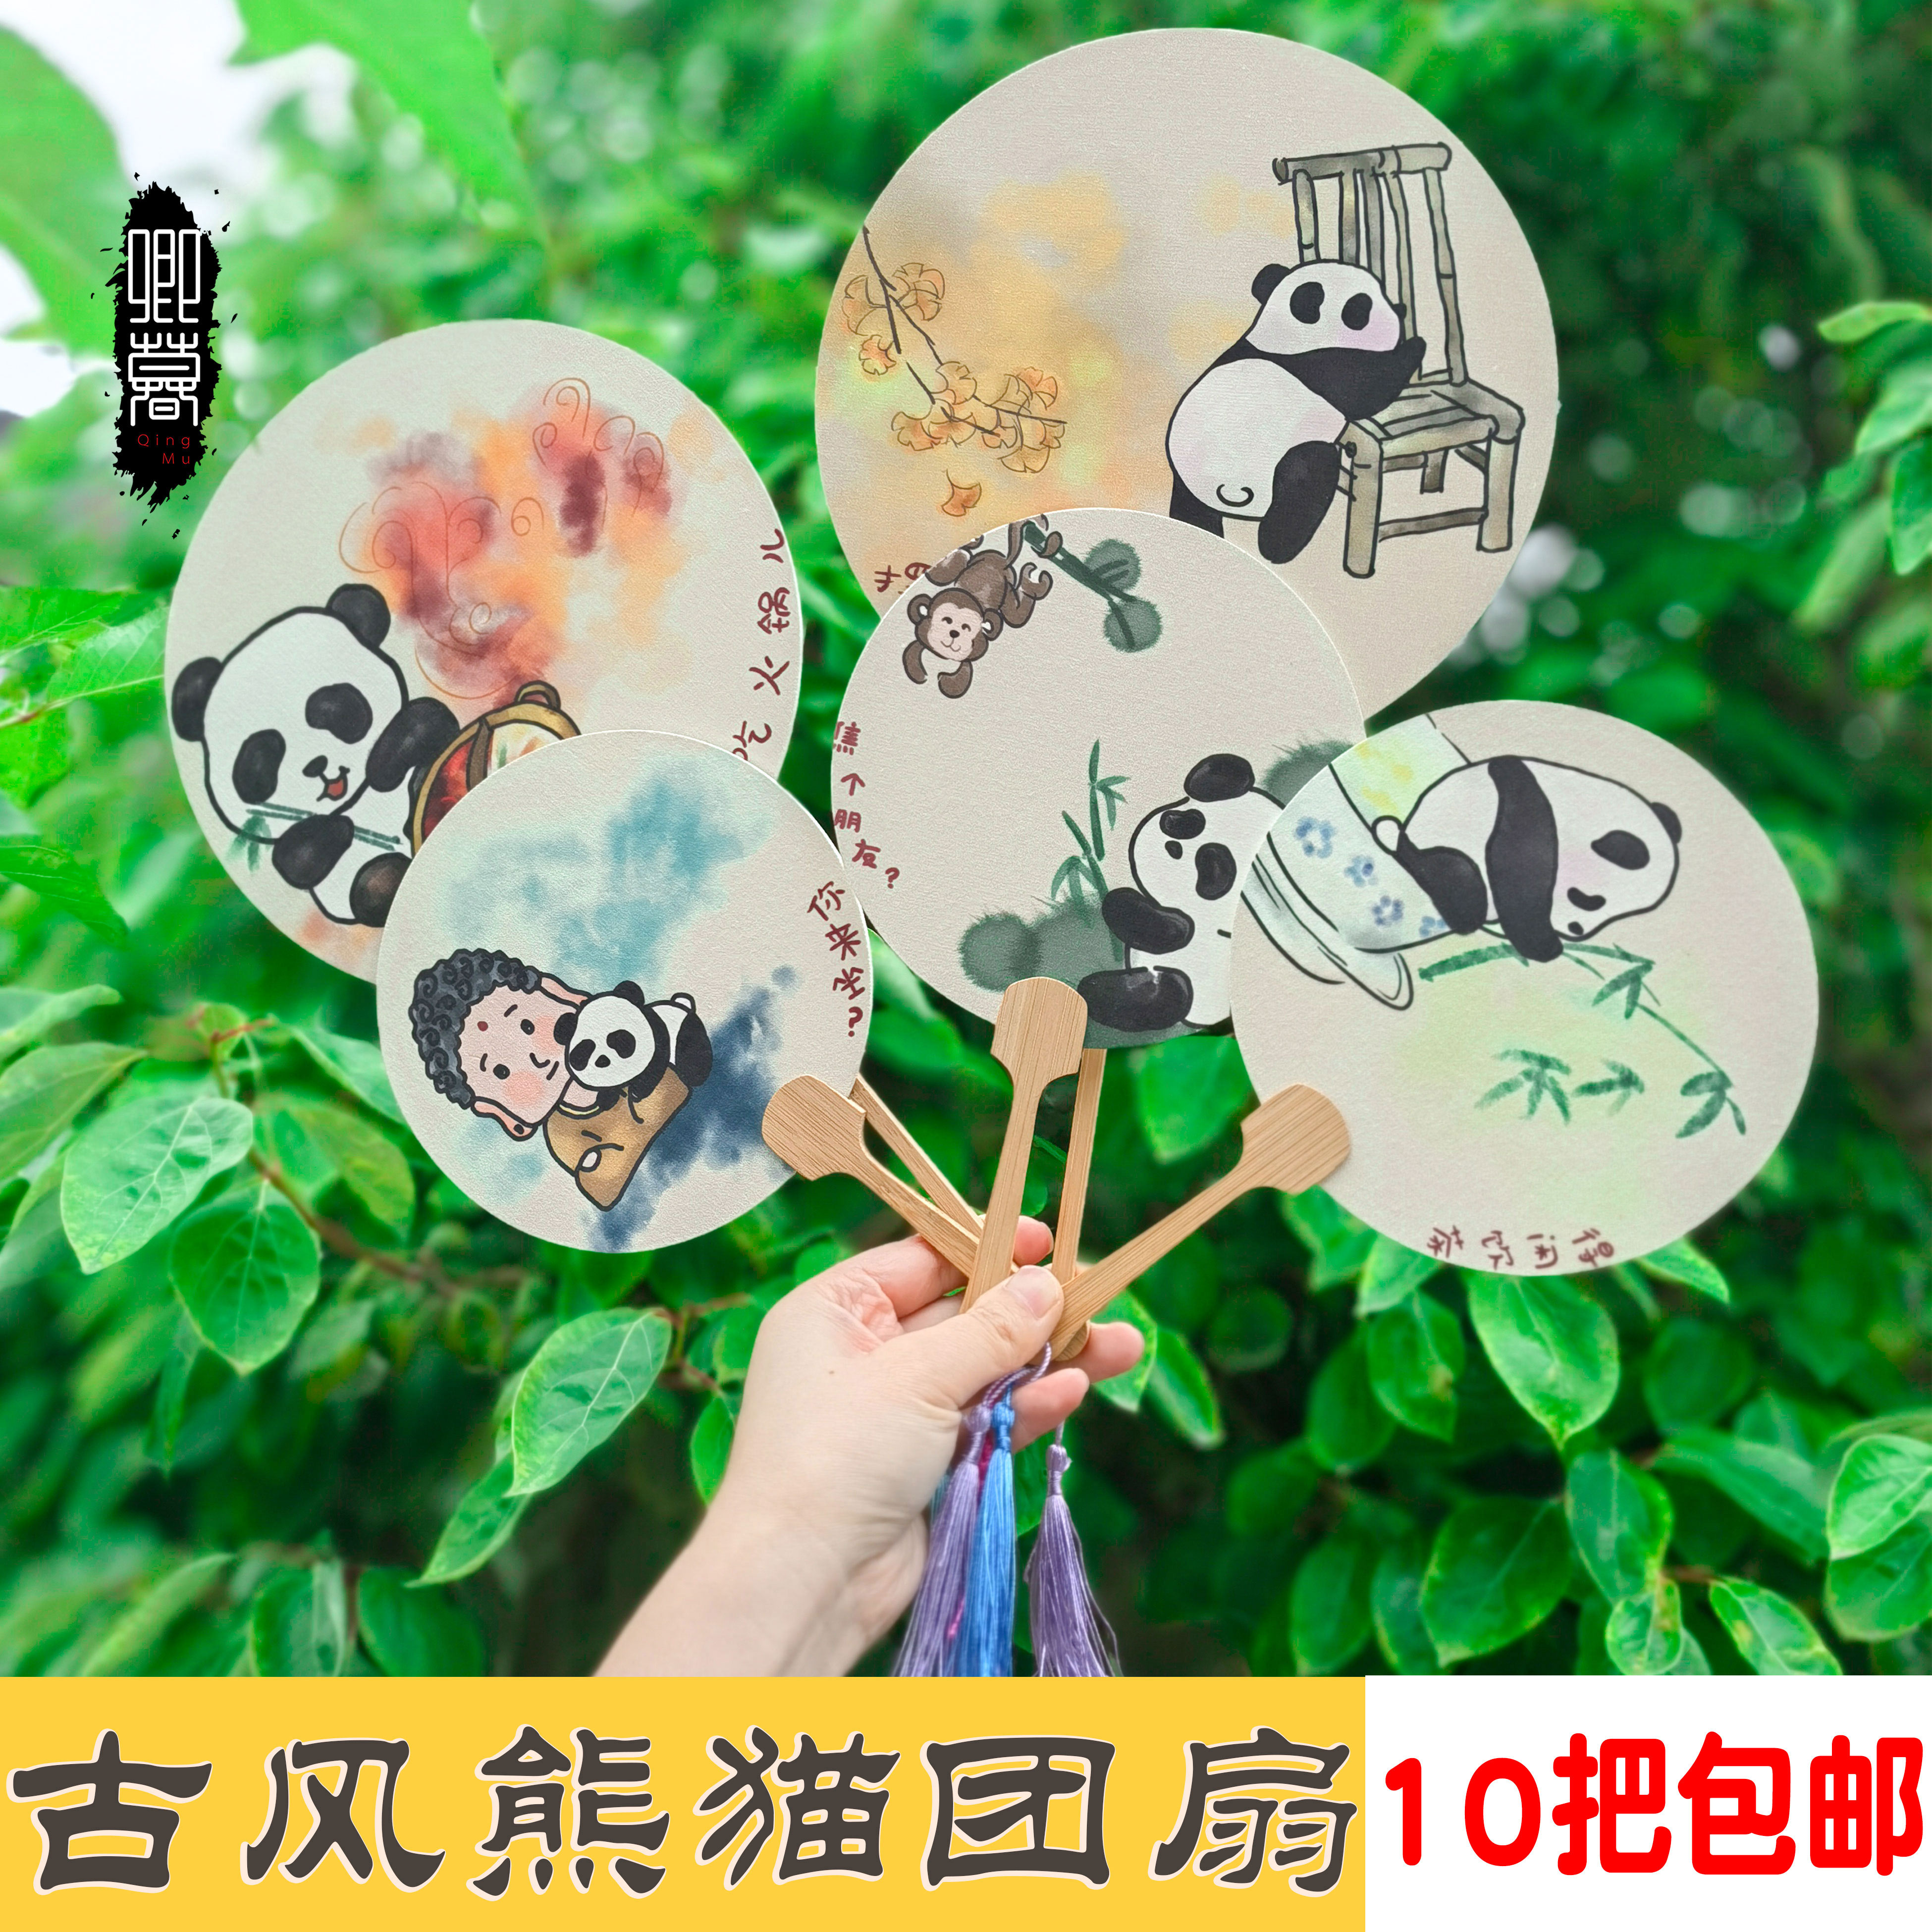 摆拍中国风画熊猫印刷成品扇子网红团扇夏季旅游景点热卖产品